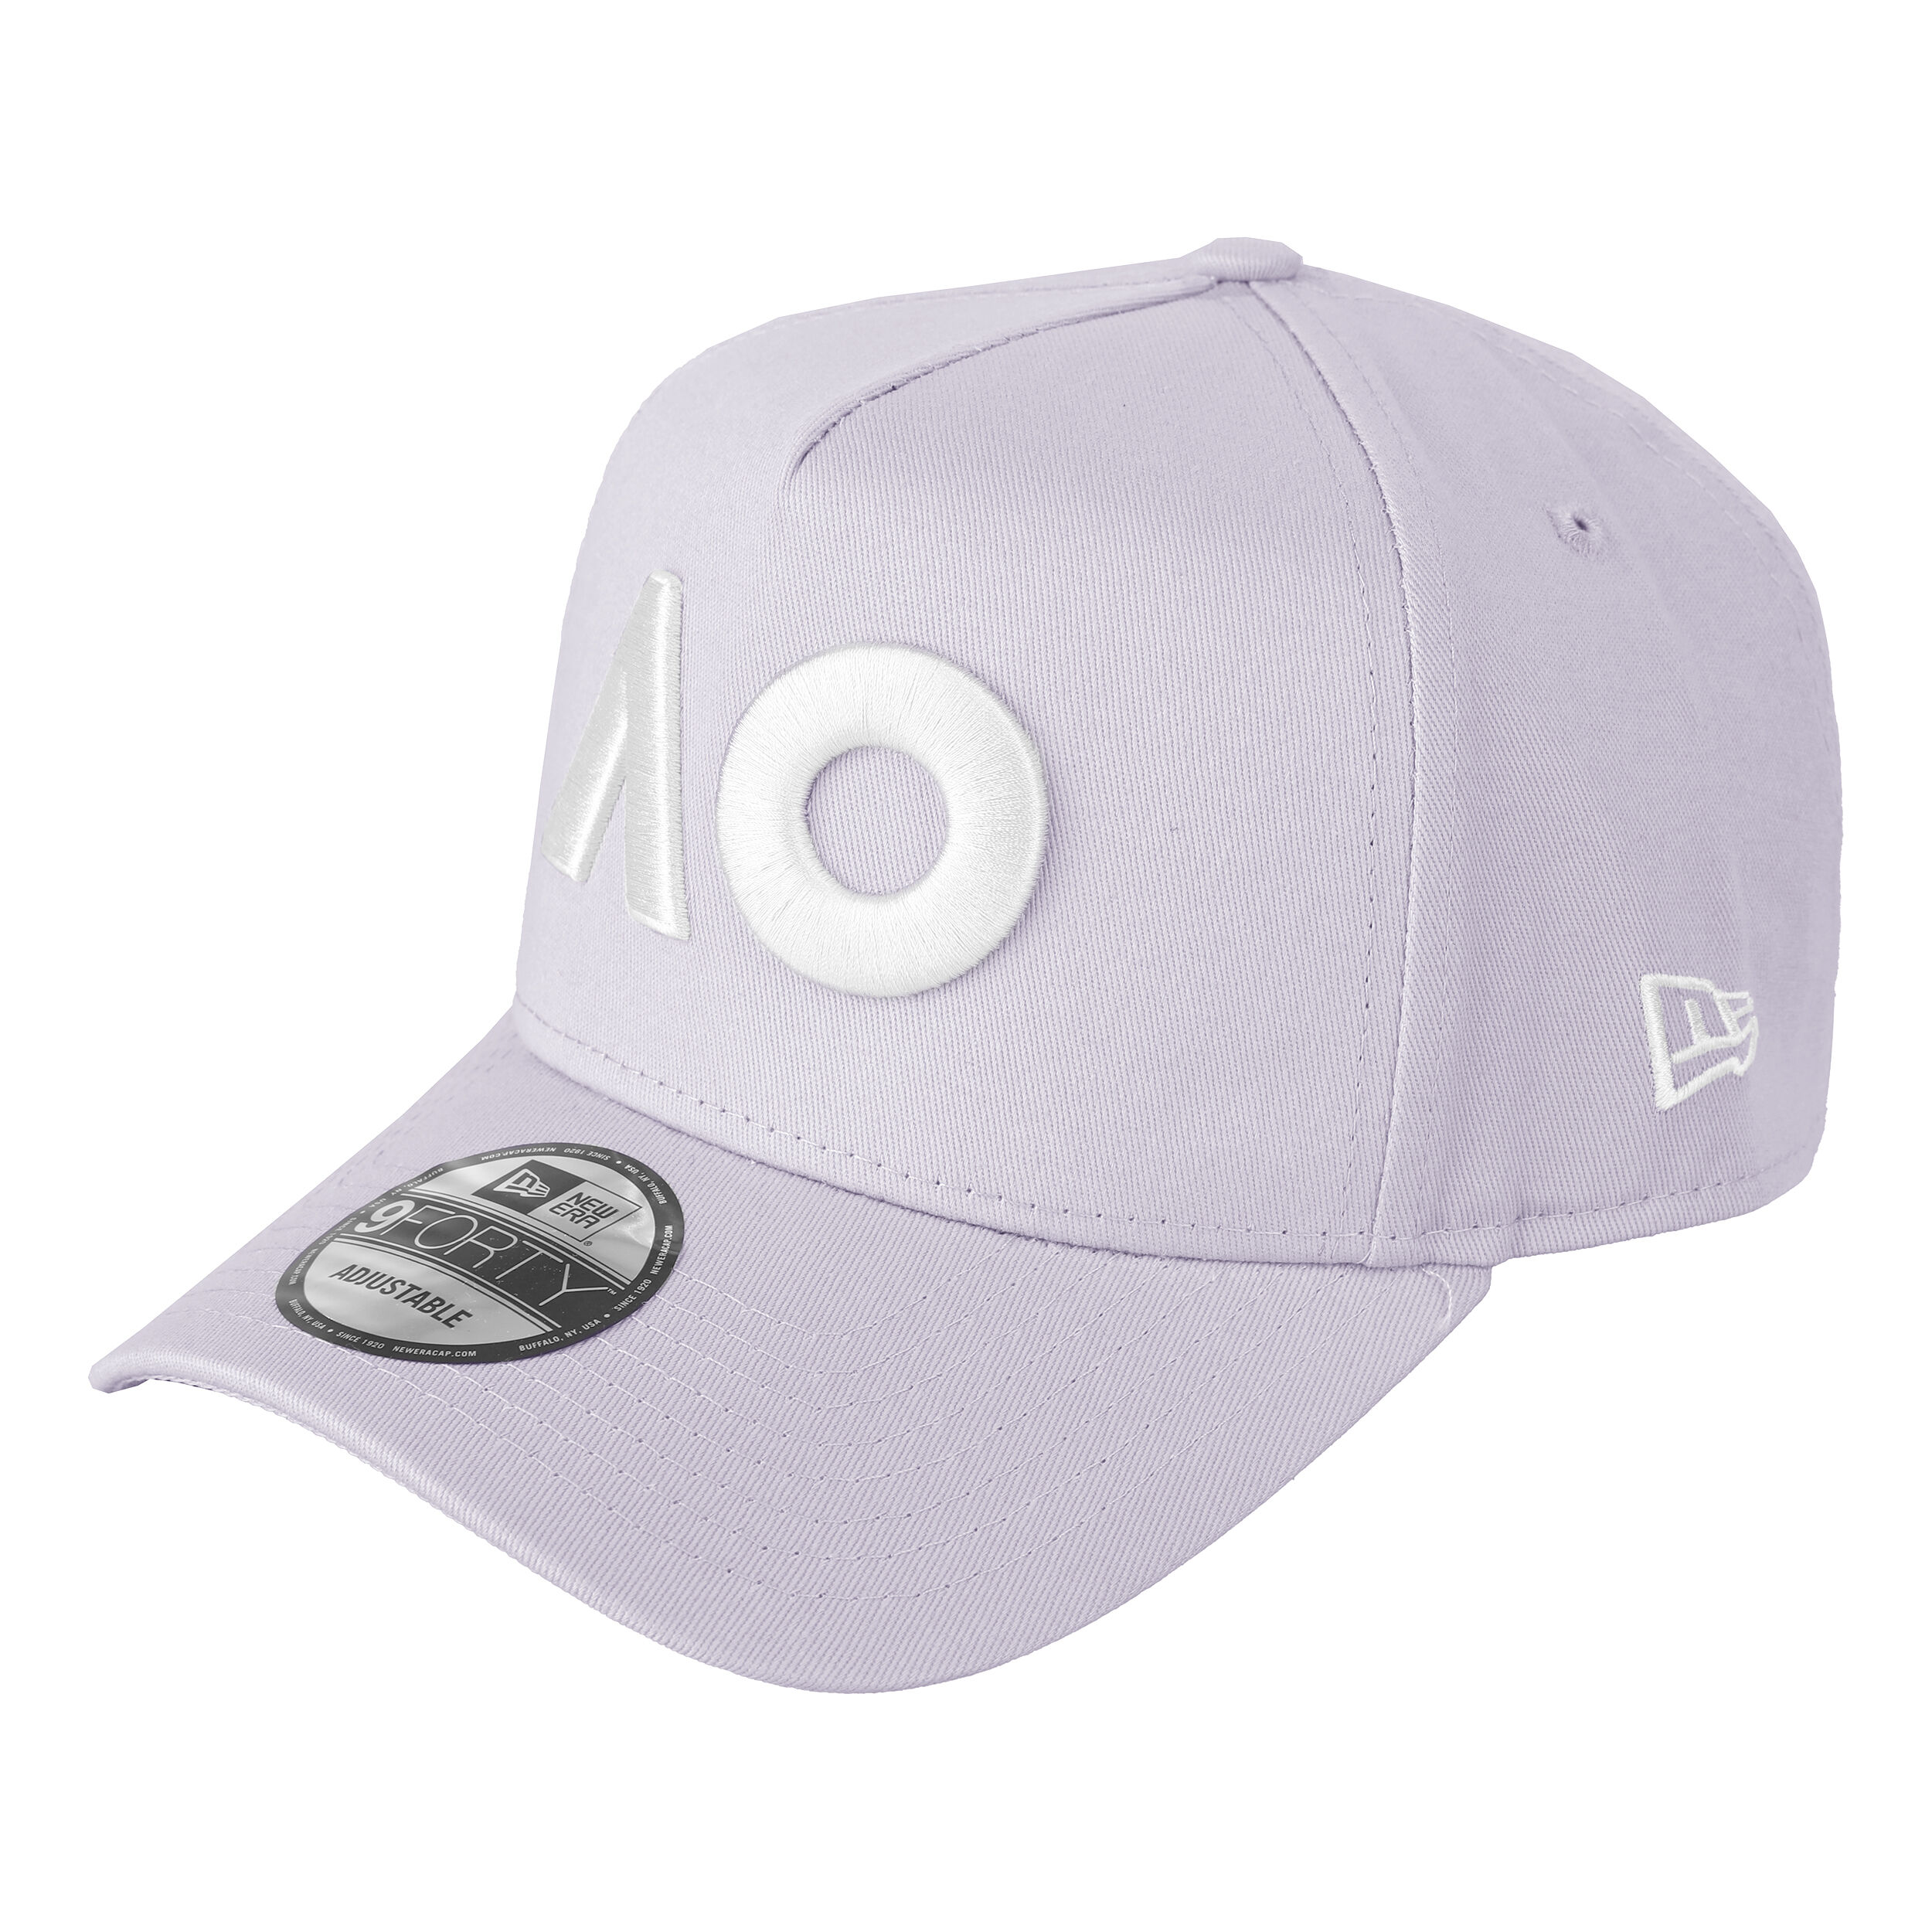 Navy White NEW Australian Open Offcial 2019 Logo Cap AO19H01 Tennis Merchandise 